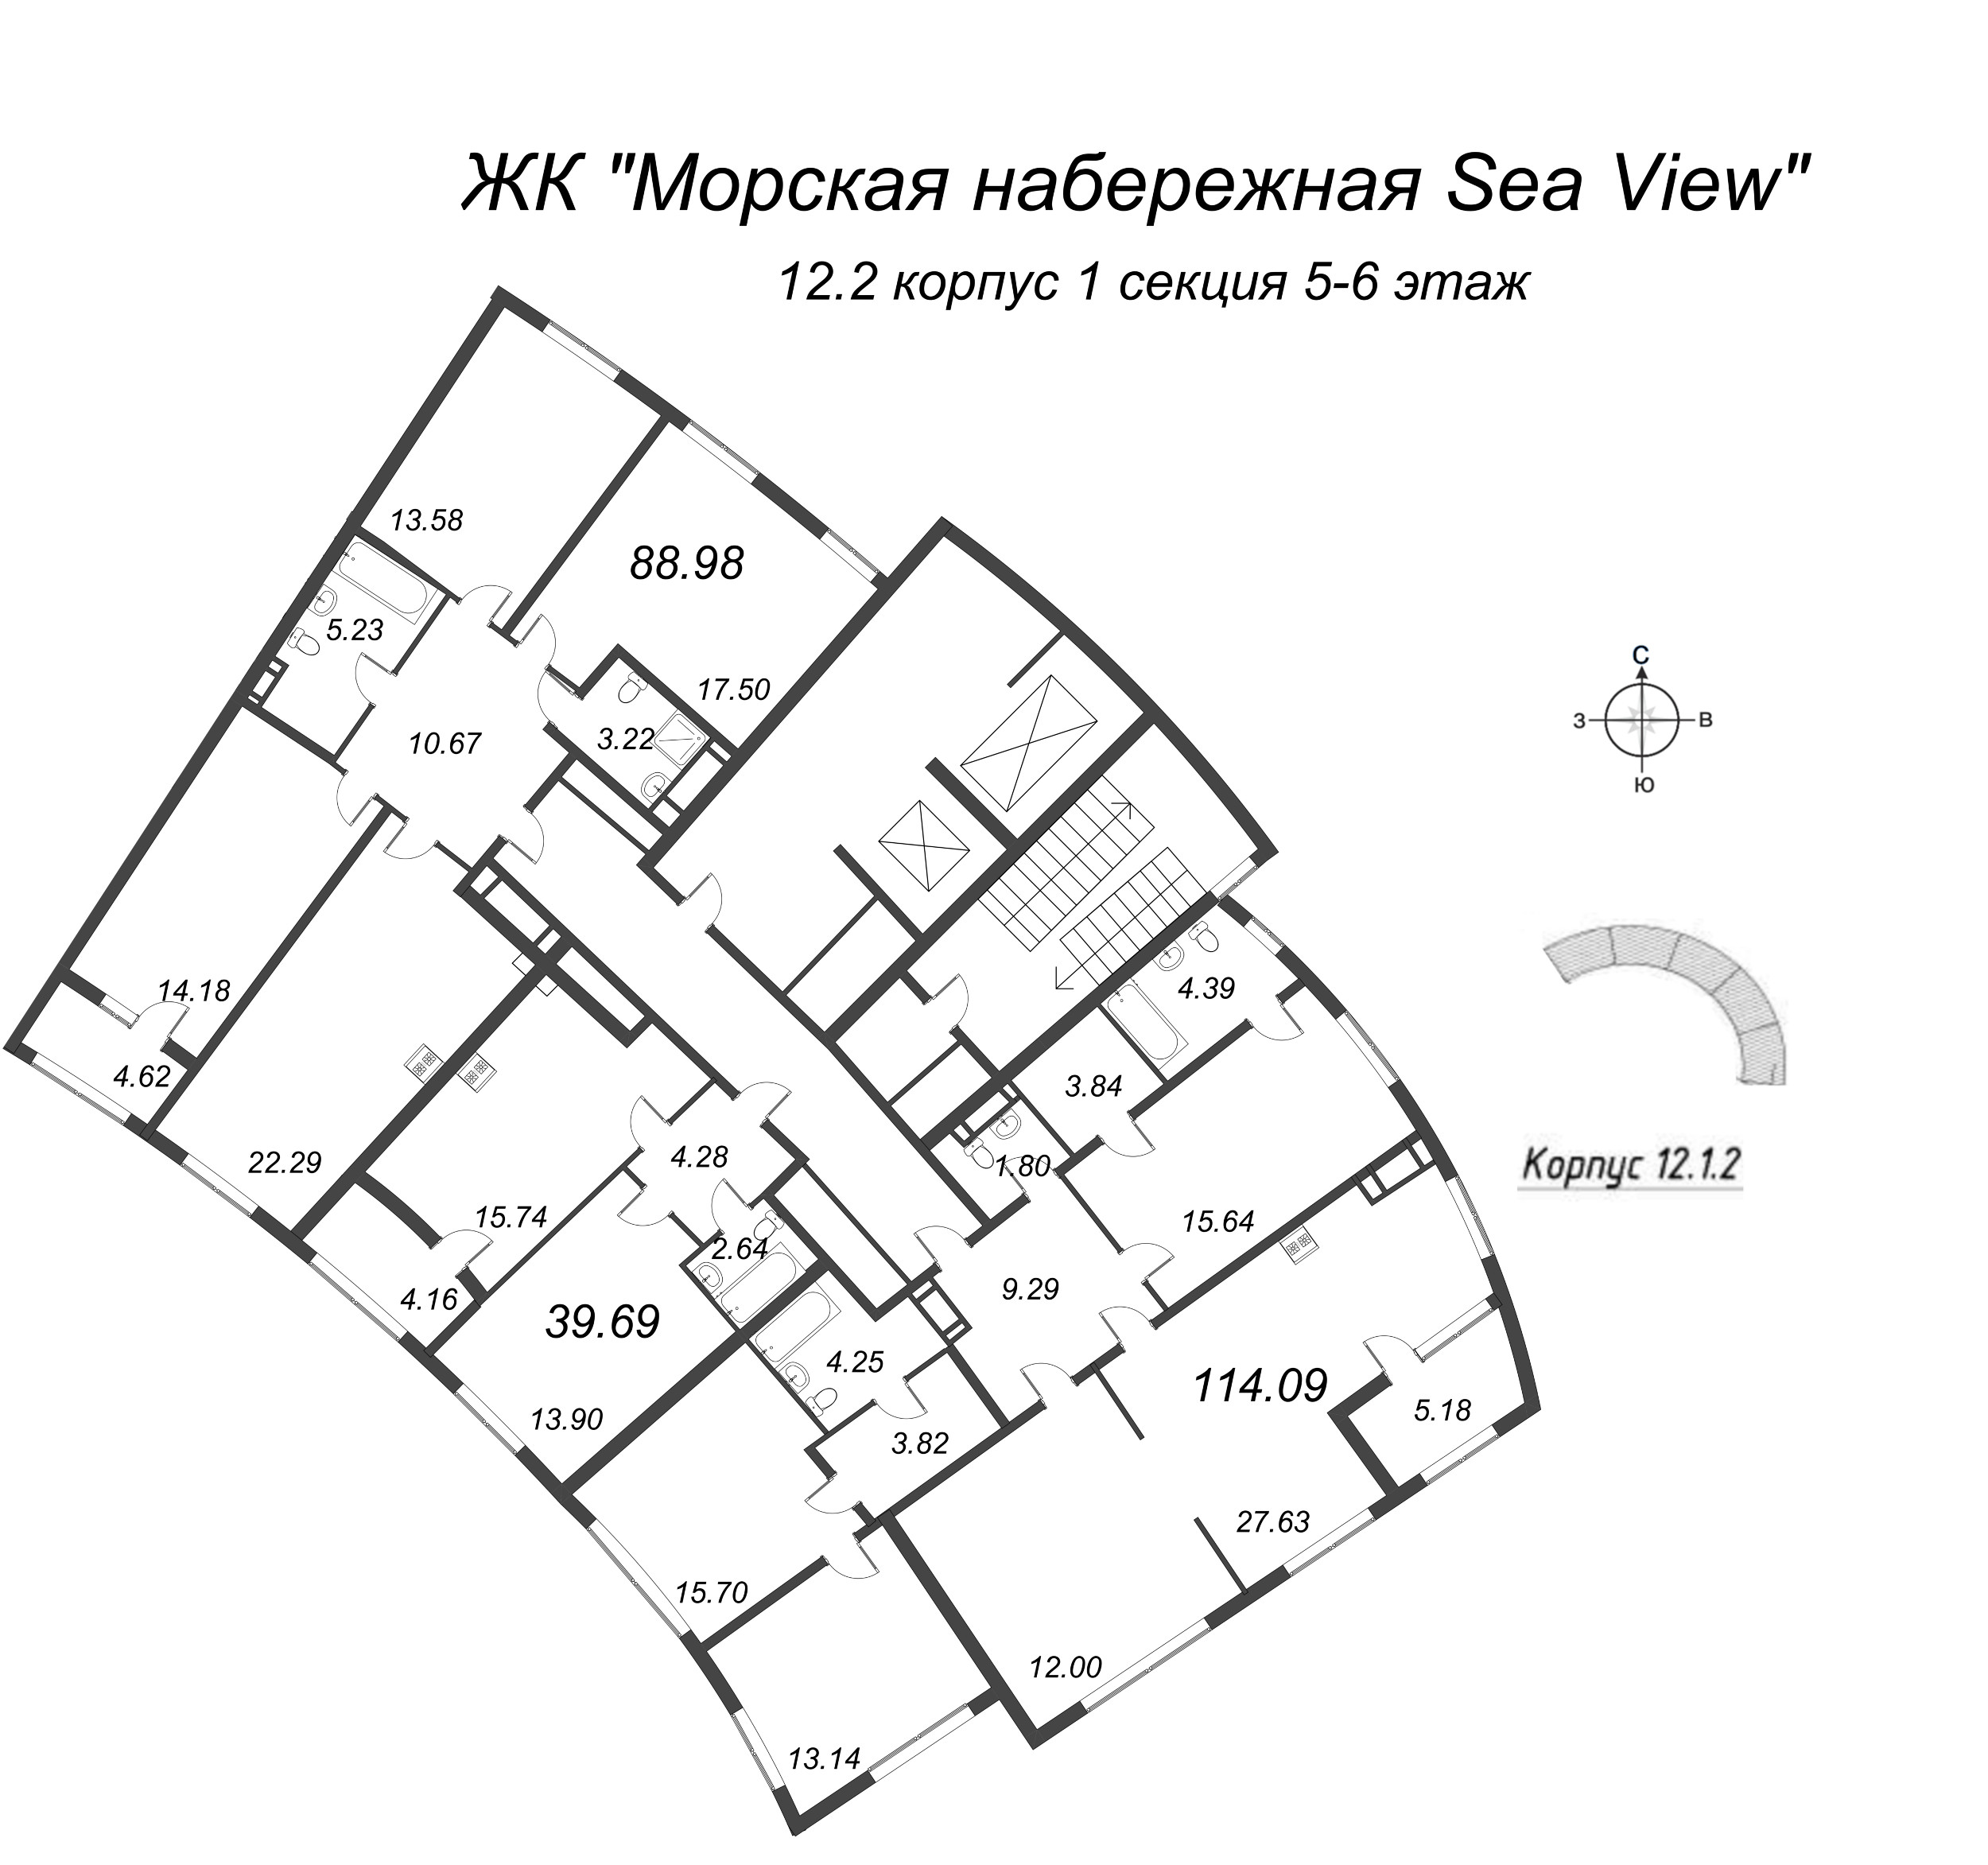 4-комнатная (Евро) квартира, 88.98 м² в ЖК "Морская набережная. SeaView" - планировка этажа